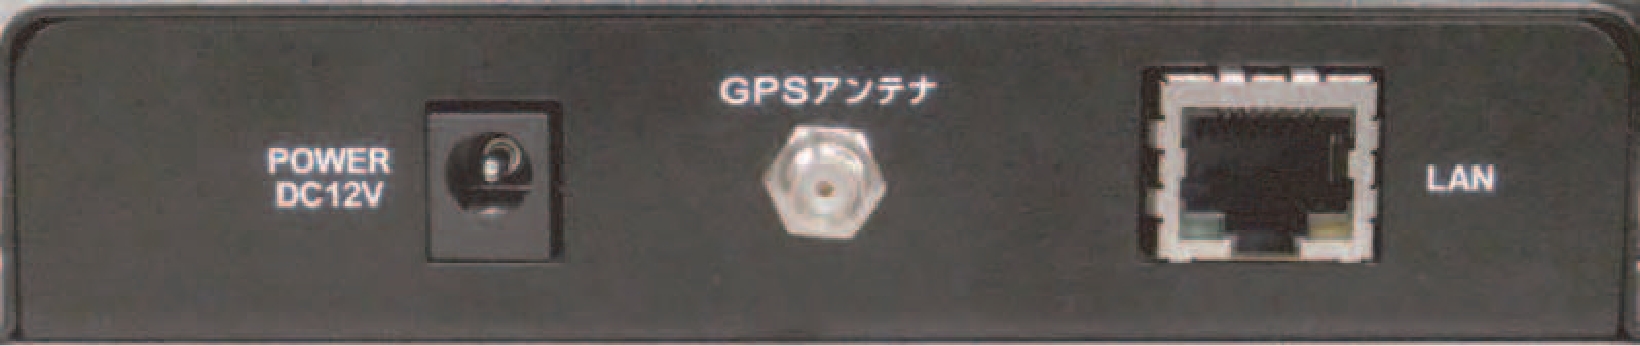 GPS型タイムサーバ